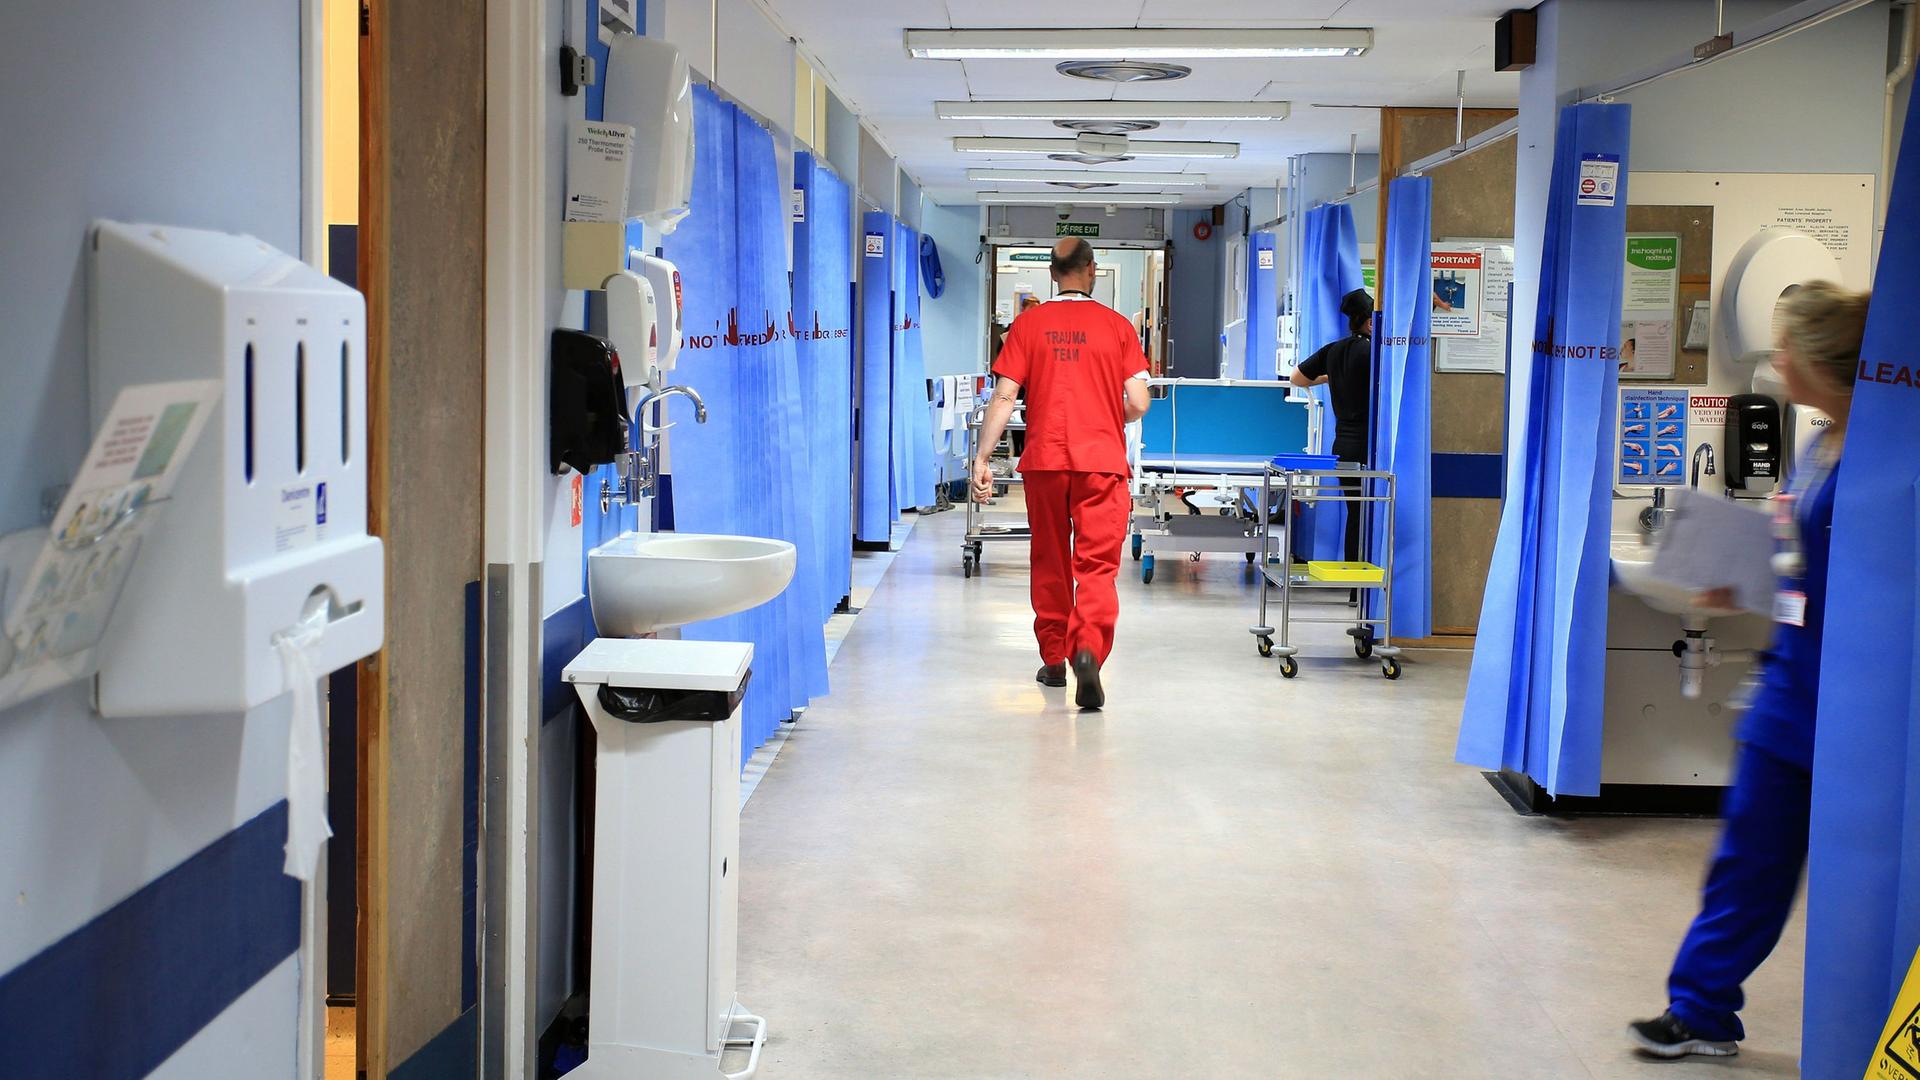 Blick auf den Flur eines öffentlichen Krankenhauses in Großbritannien